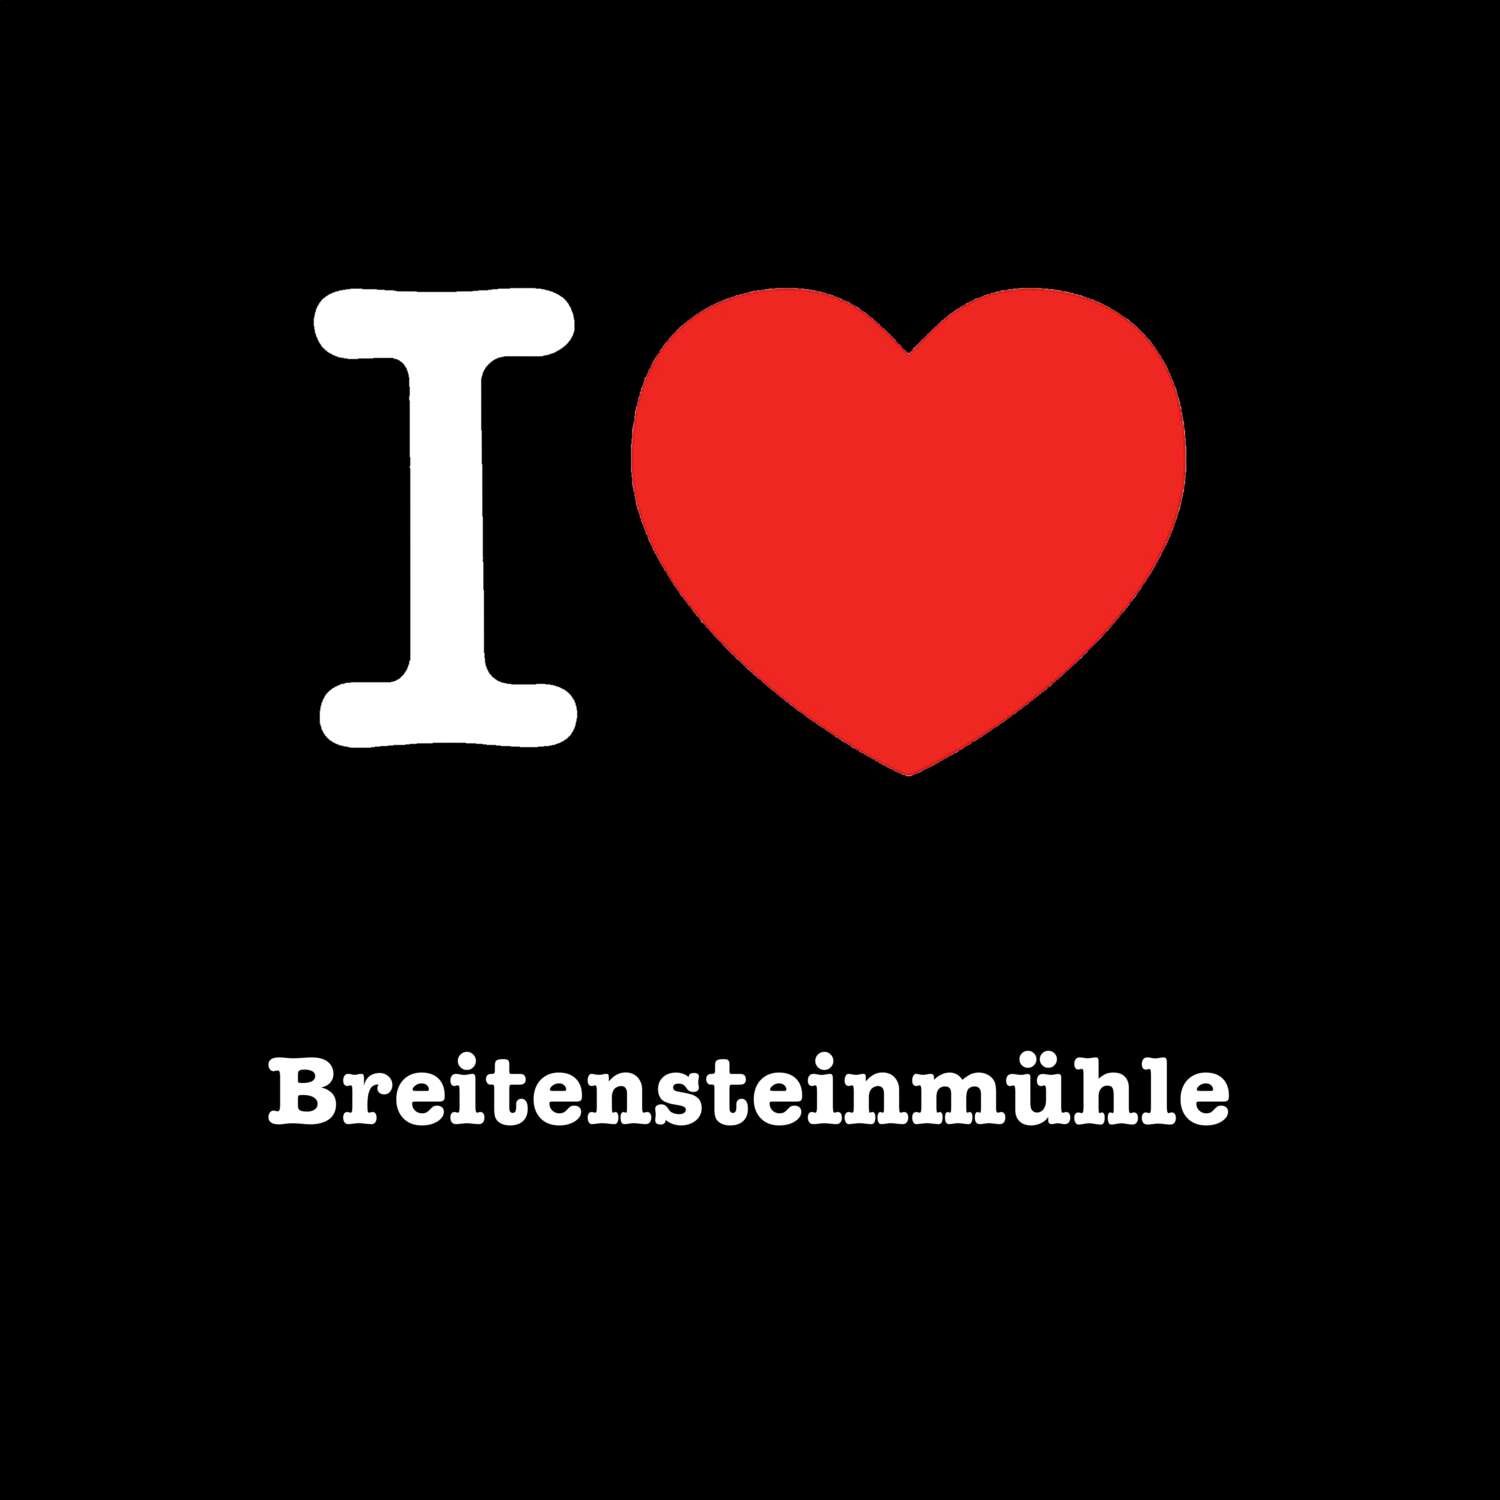 Breitensteinmühle T-Shirt »I love«